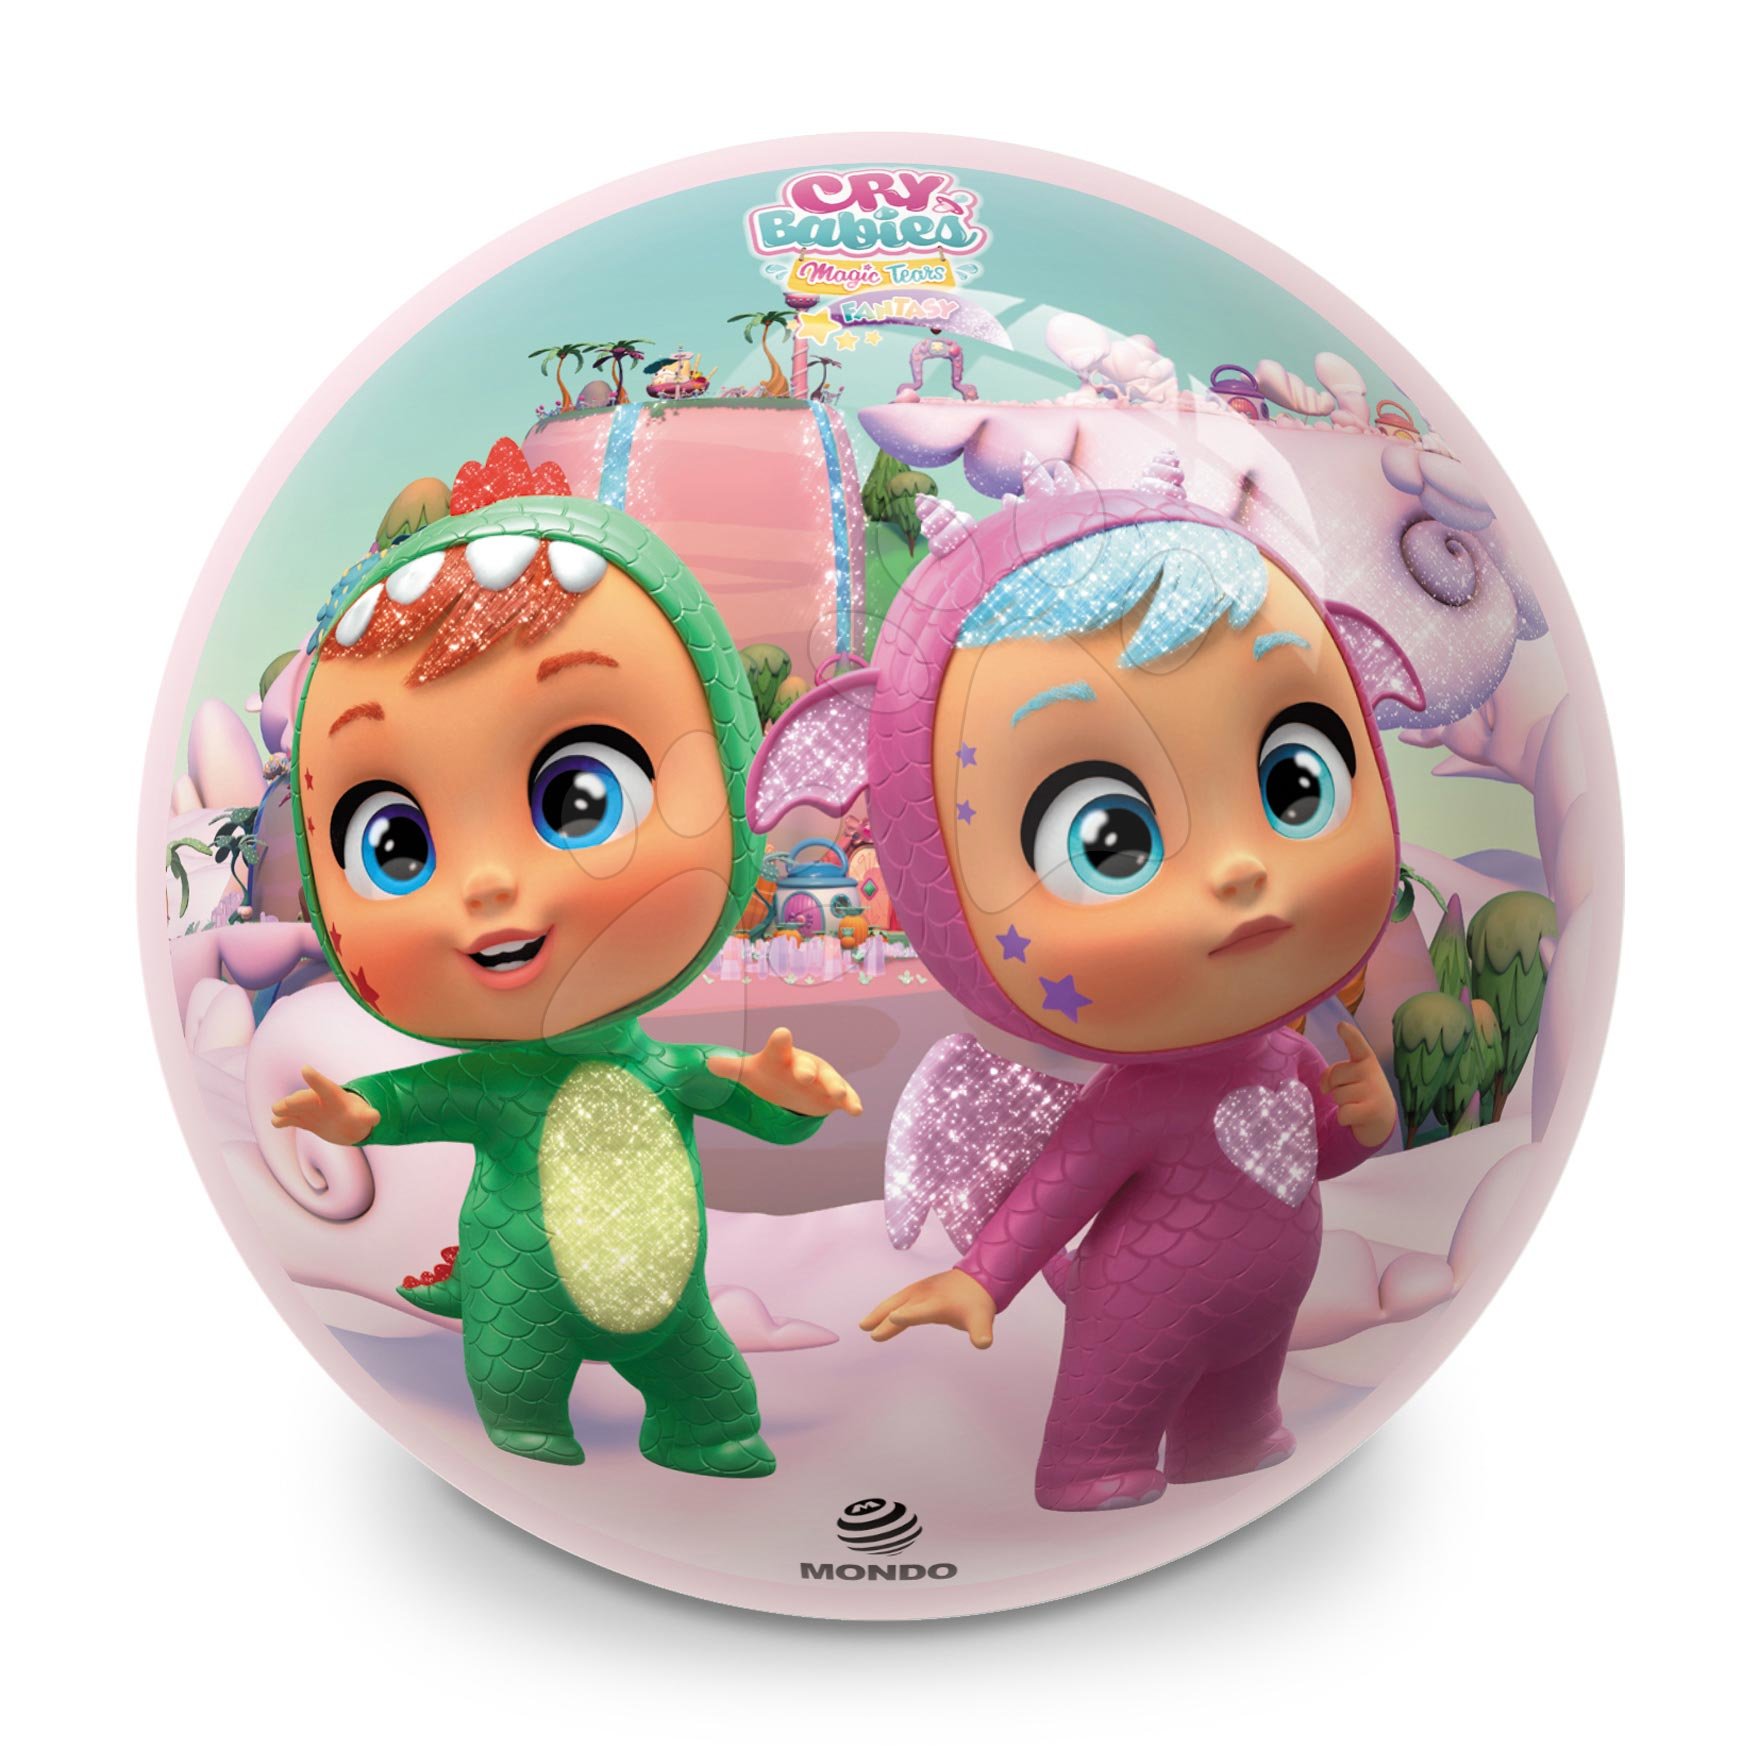 Pohádkové míče - Pohádkový míč BioBall Cry Babies Mondo 23 cm